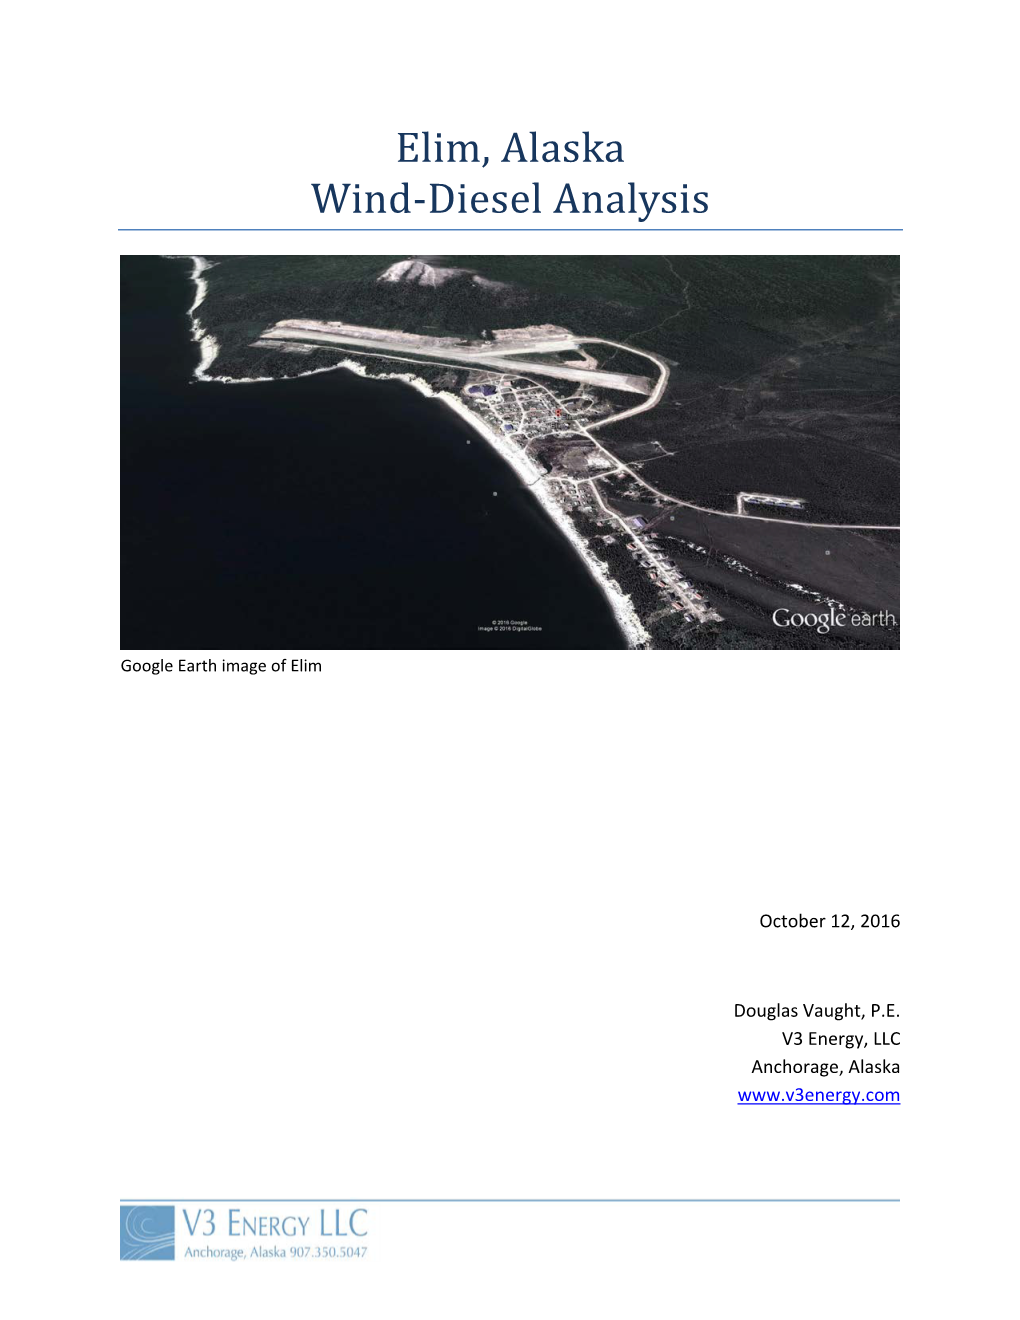 Elim, Alaska Wind-Diesel Analysis